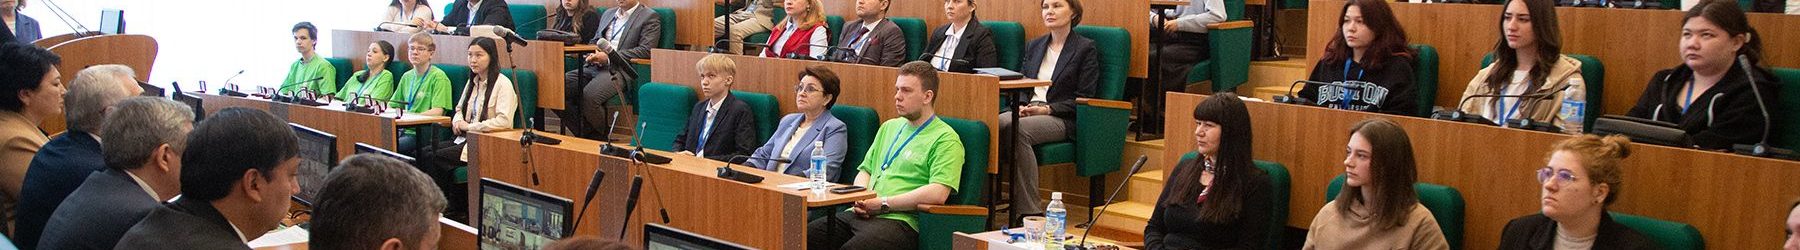 Студенты из Владивостока отличились на XIII Евразийском экономическом форуме молодёжи в Екатеринбурге